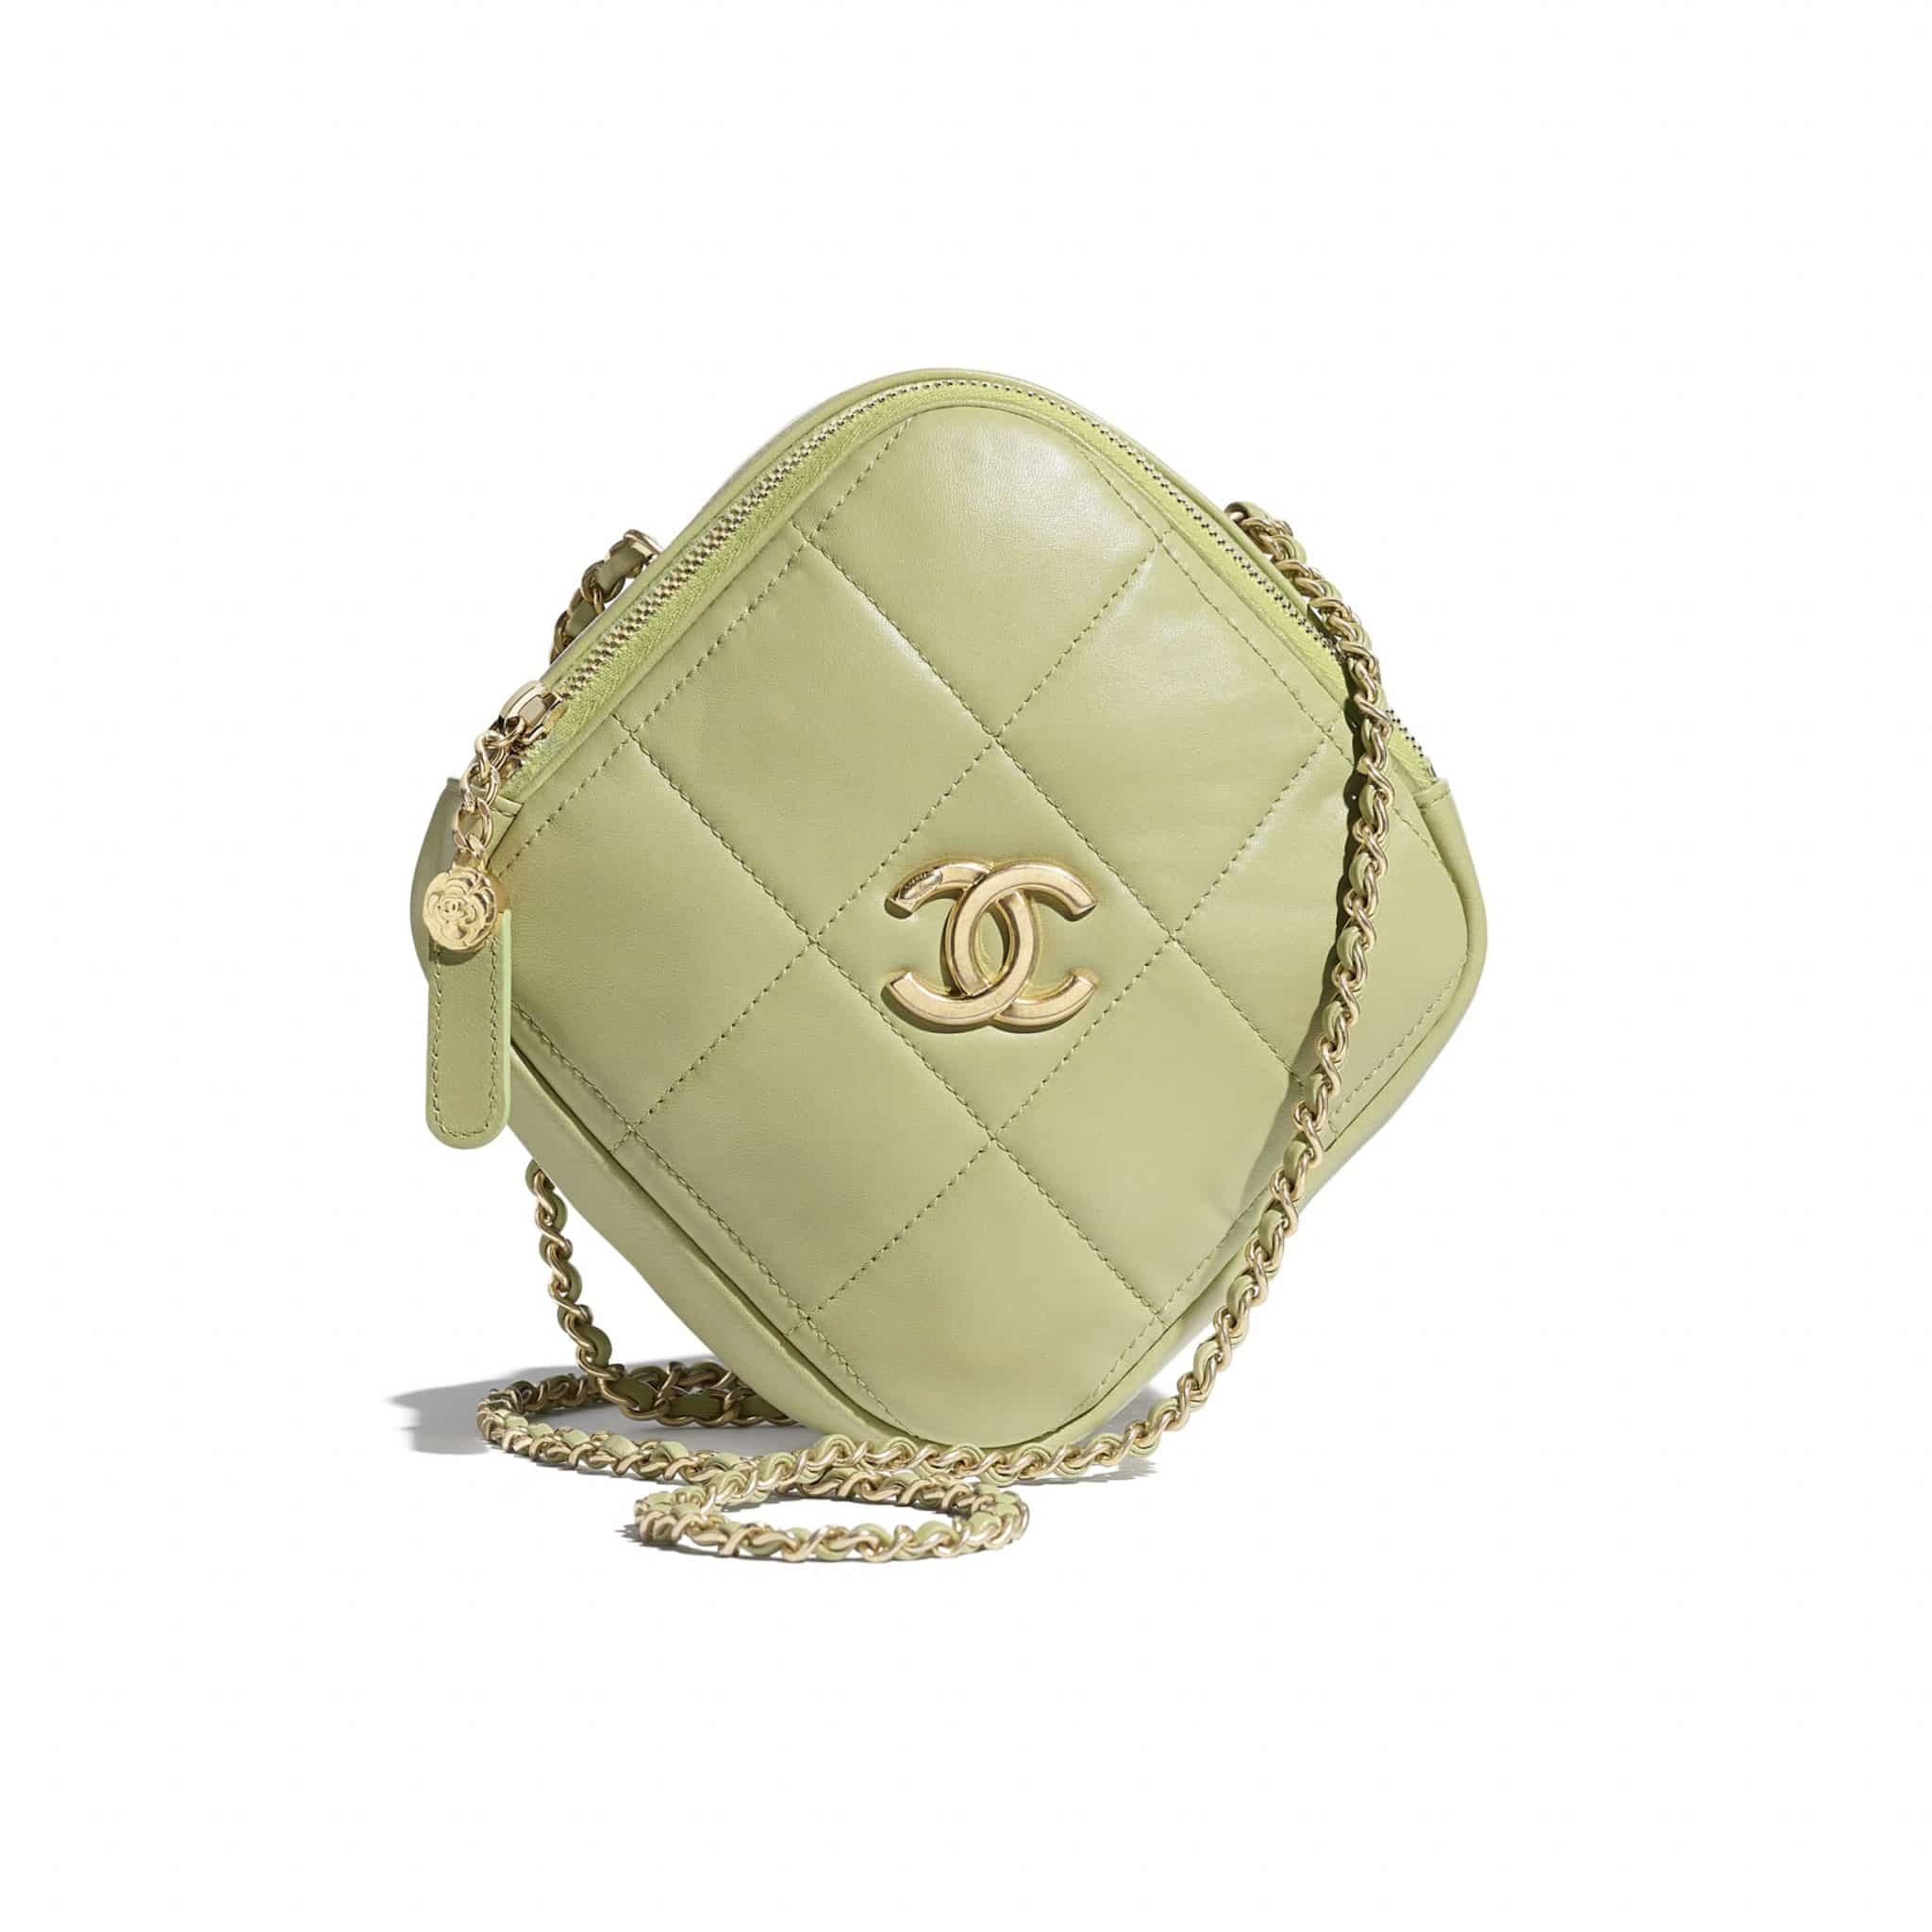 Chanel Diamond Bag  Chanel Bag  YouTube